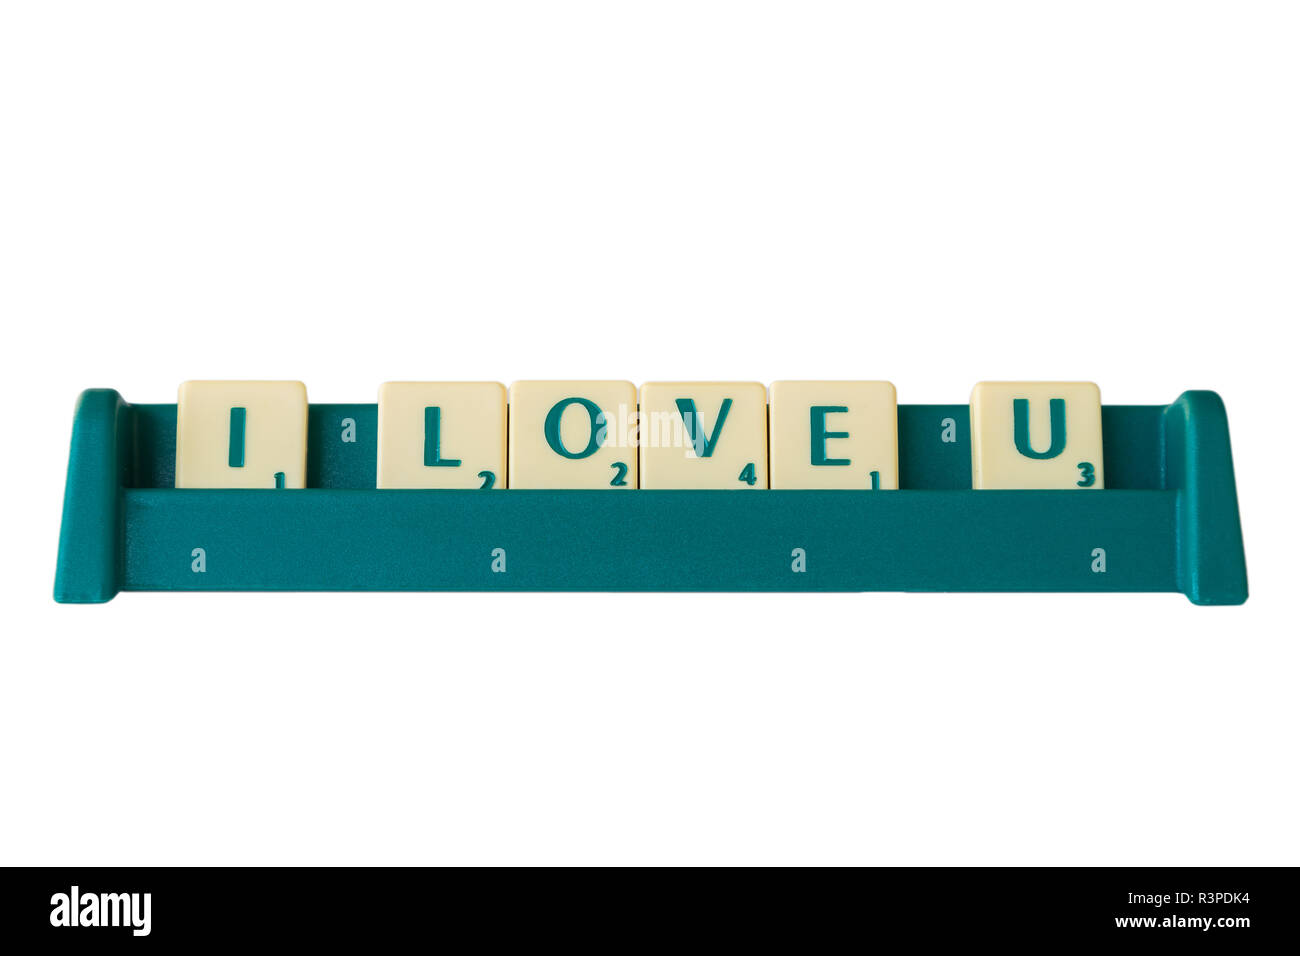 Jeu de Scrabble lettres avec valeur score sur un support formant la phrase 'J'aime'. Isolé sur fond blanc. Banque D'Images